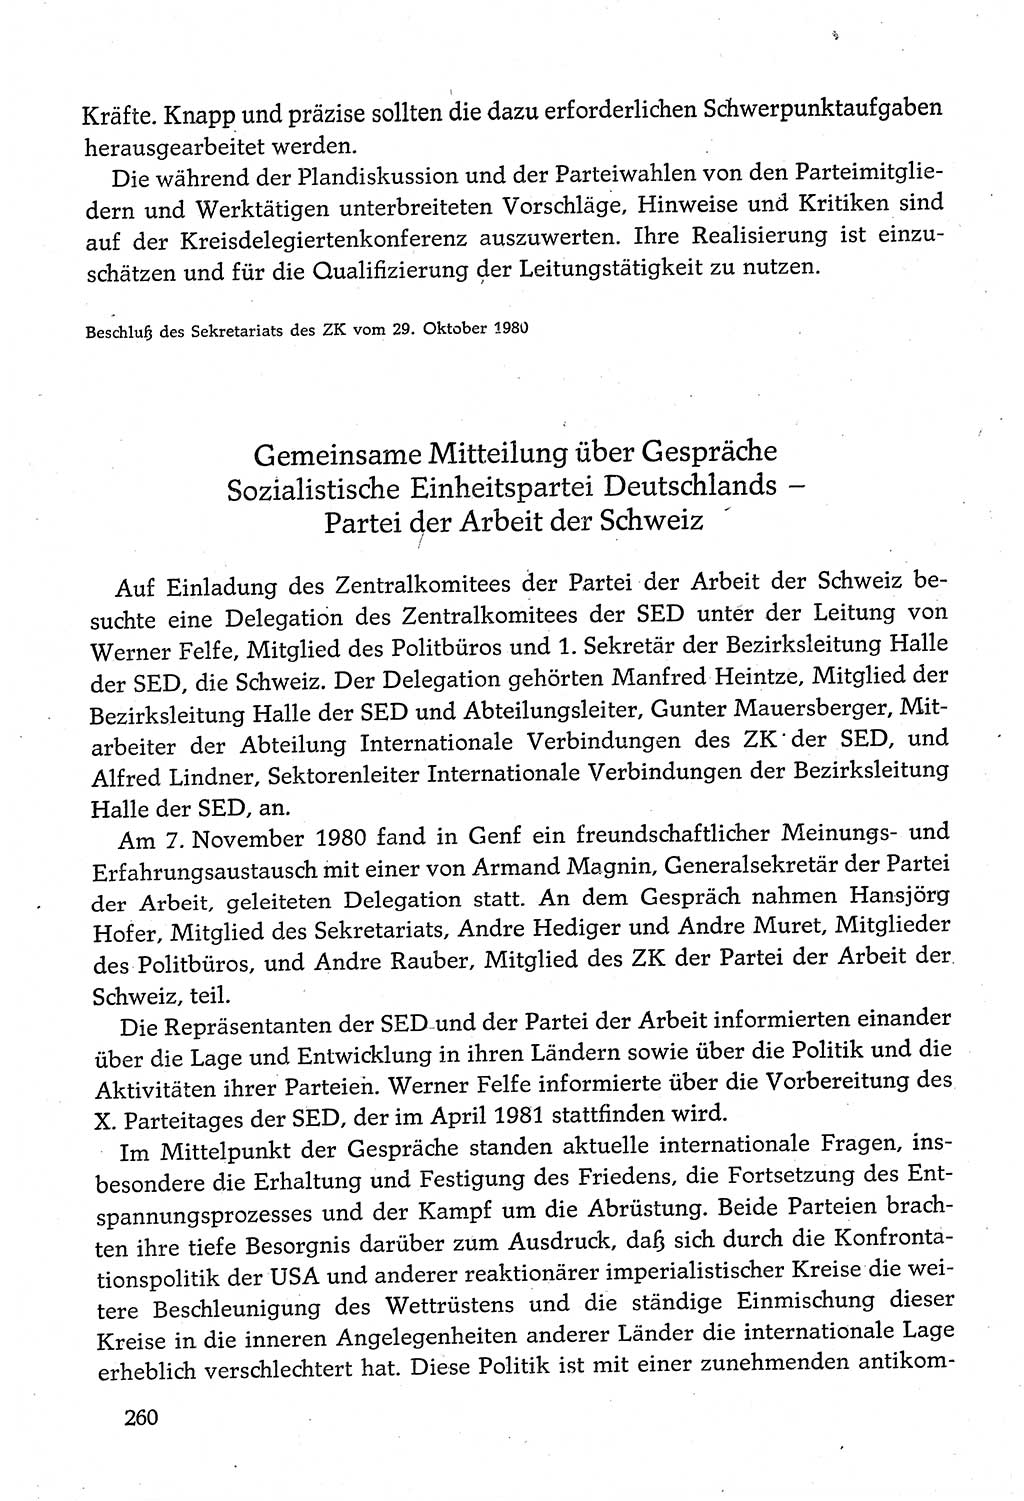 Dokumente der Sozialistischen Einheitspartei Deutschlands (SED) [Deutsche Demokratische Republik (DDR)] 1980-1981, Seite 260 (Dok. SED DDR 1980-1981, S. 260)